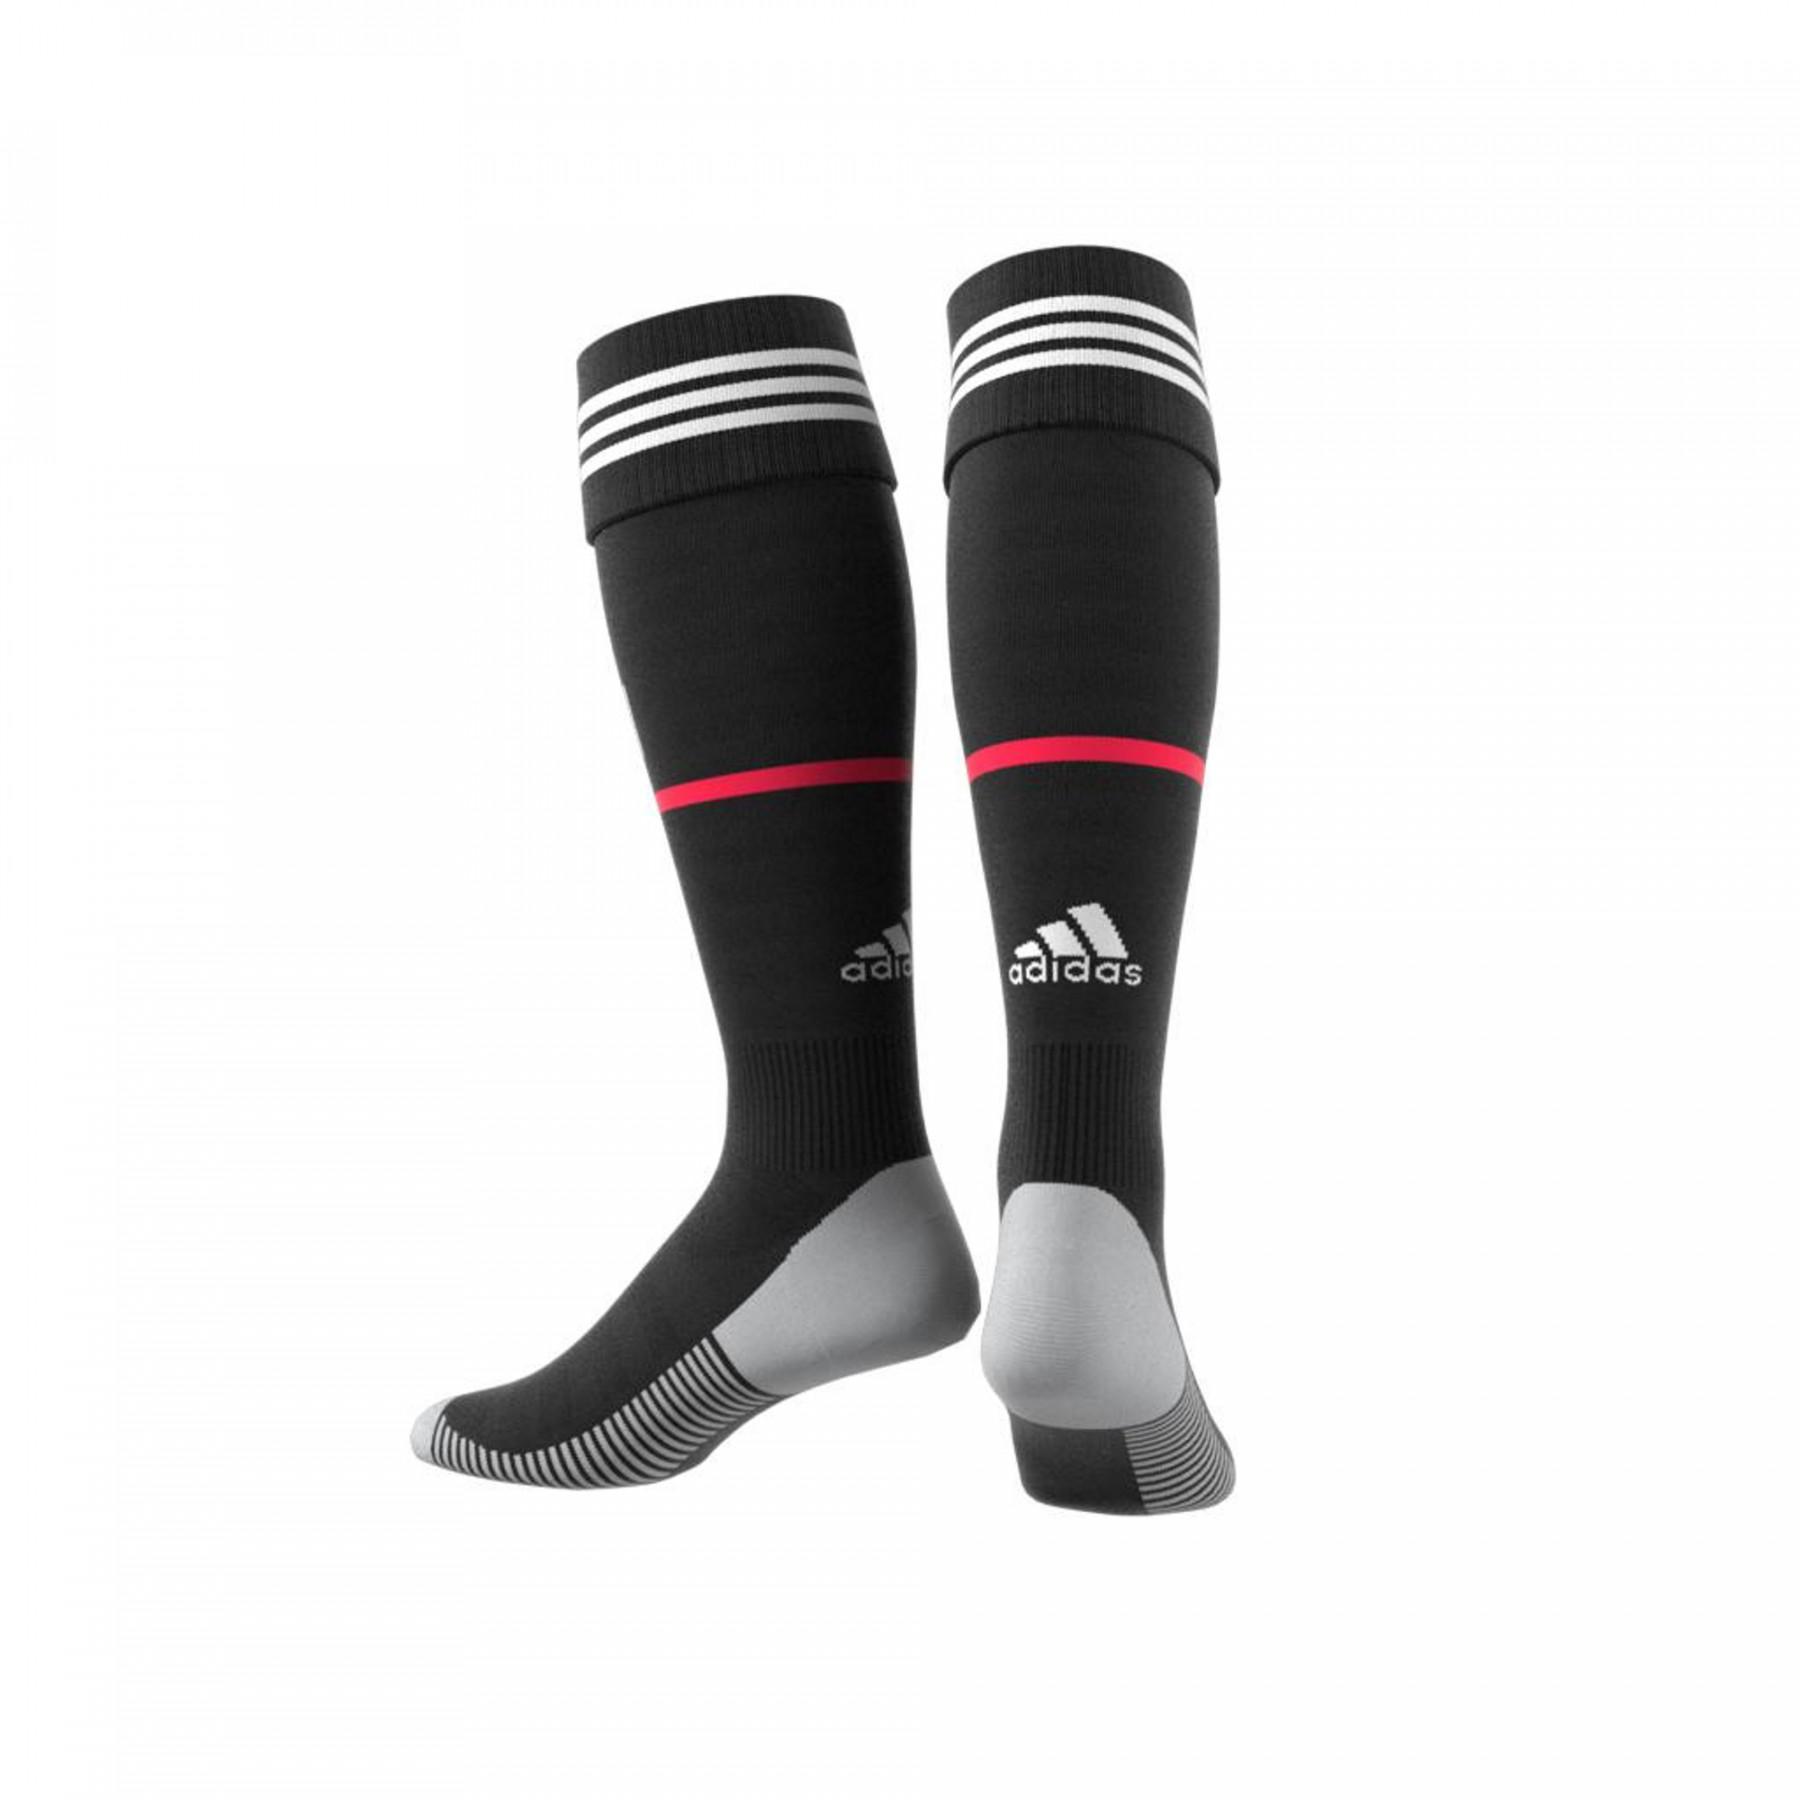 Home socks Juventus 2019/20